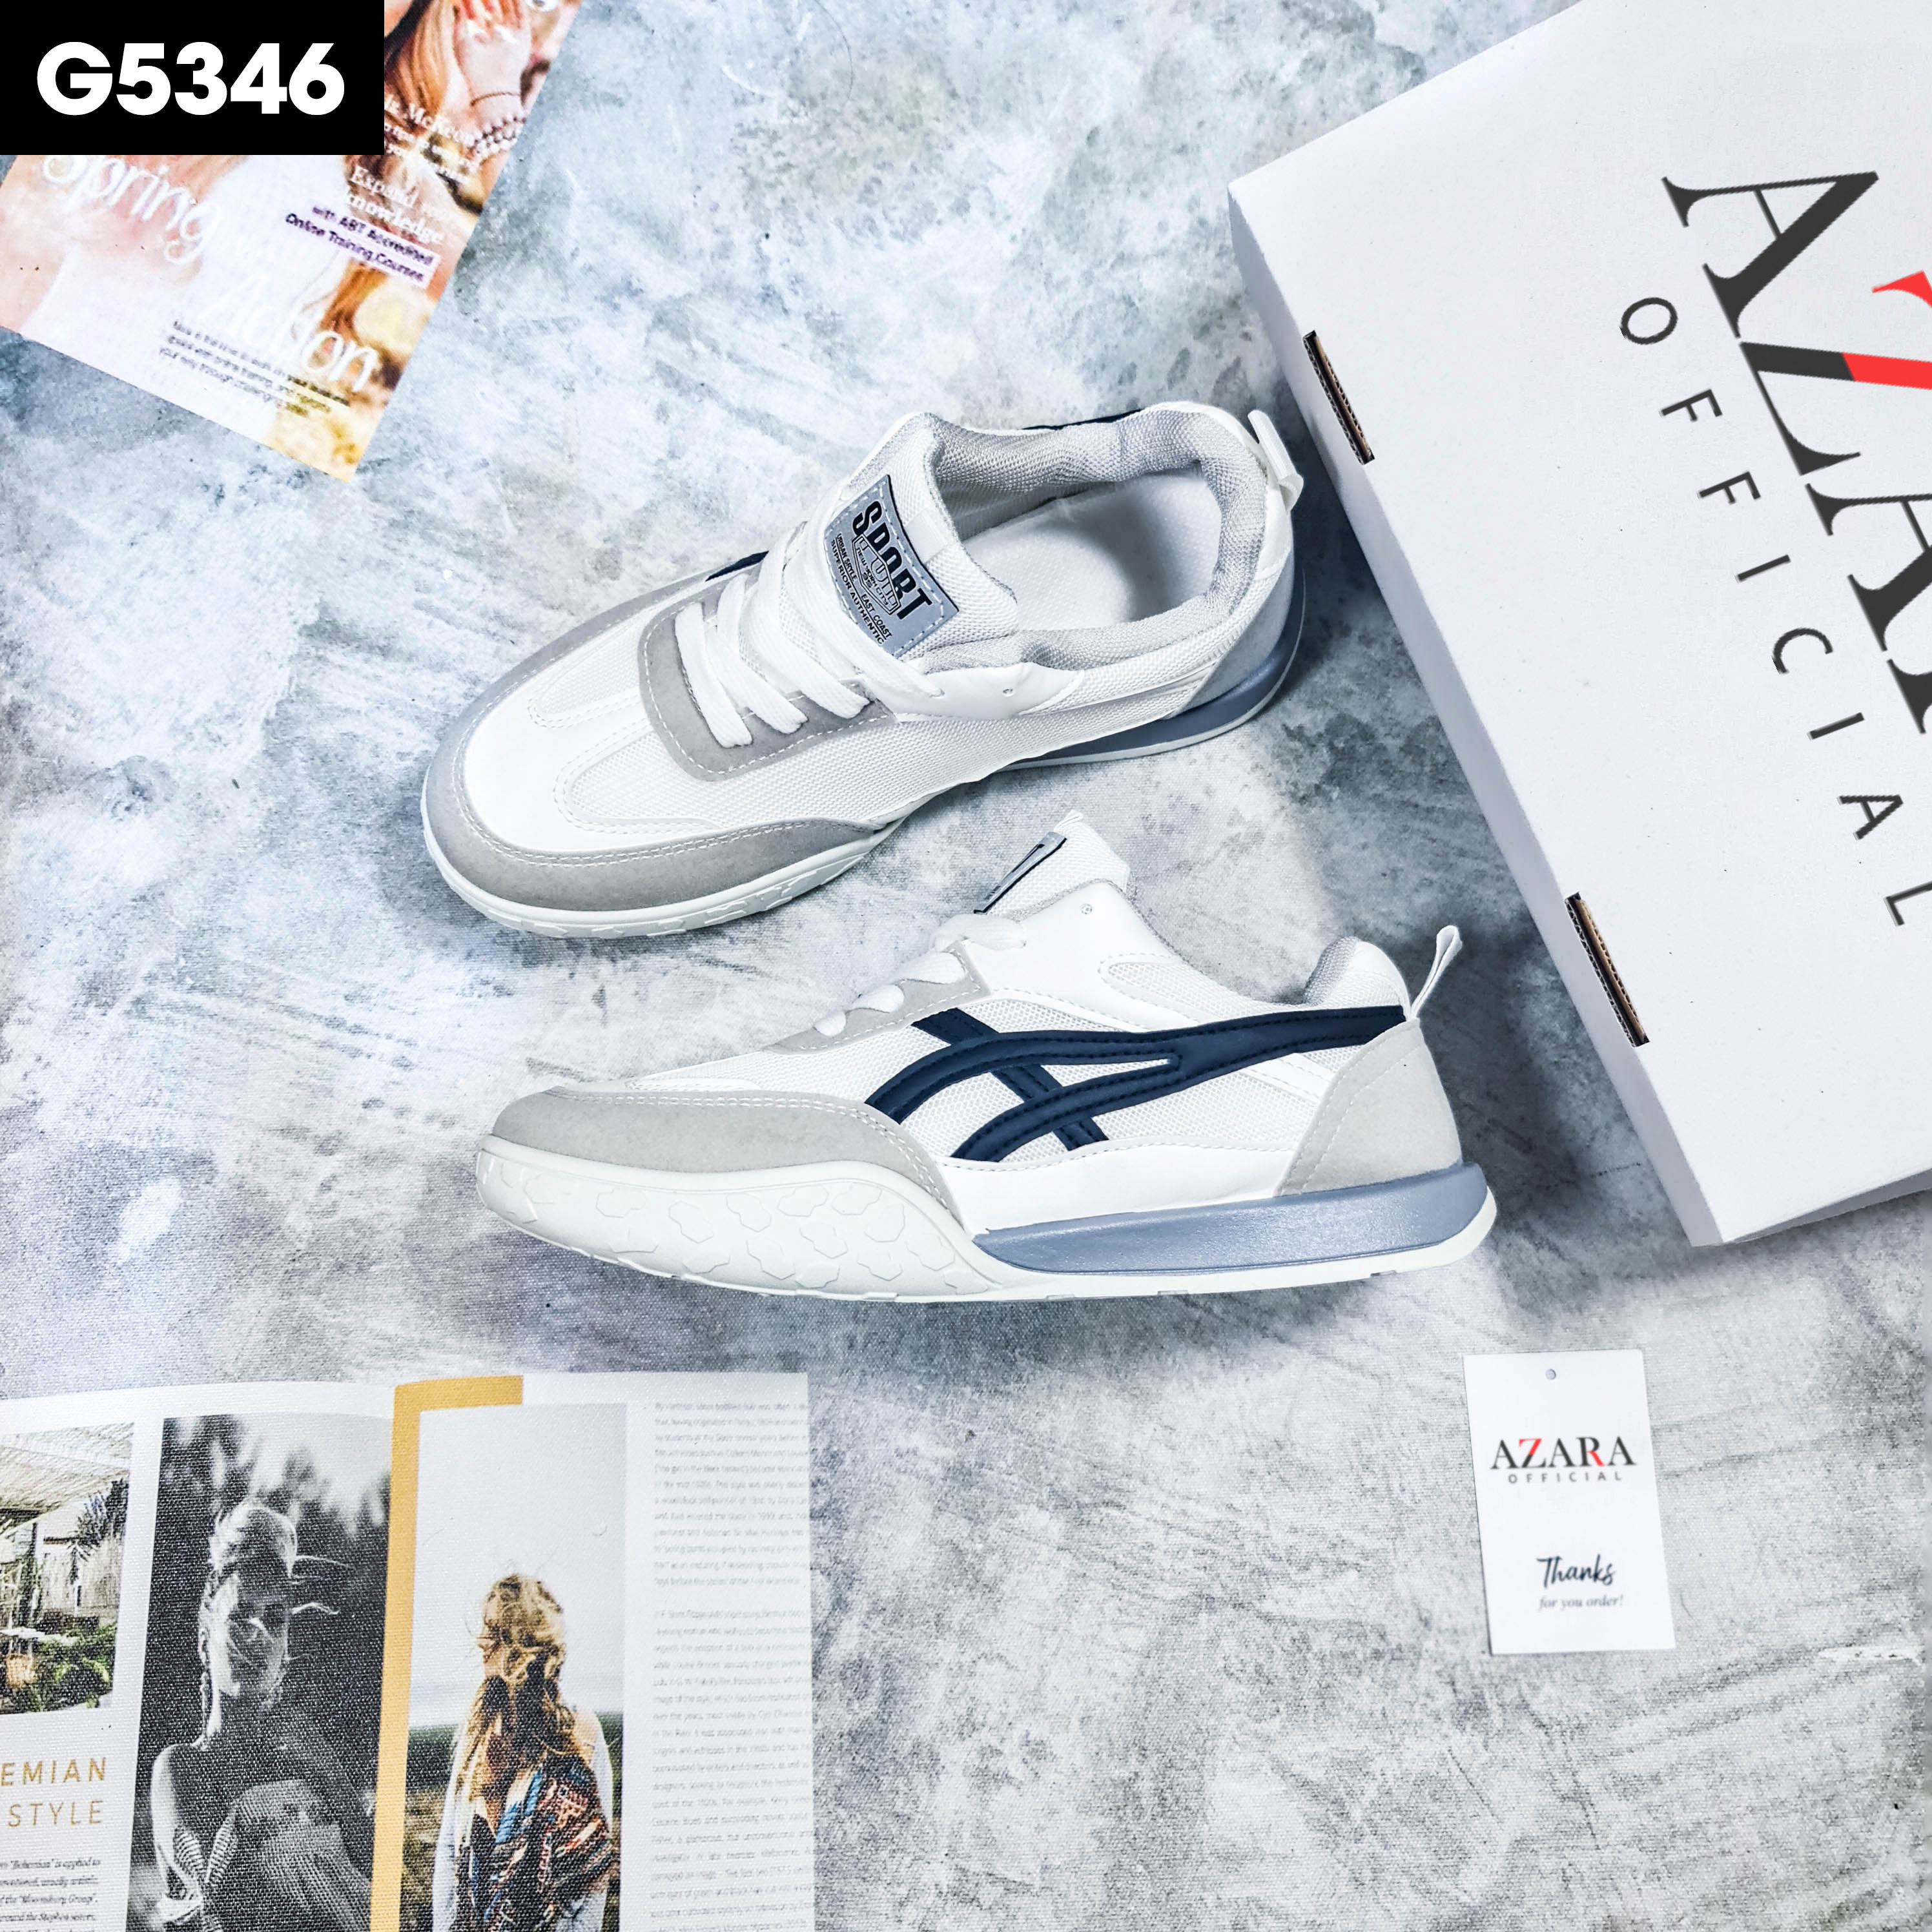 Giày Thể Thao Nam AZARA- Sneaker Màu Đen - Trắng - Kaki, Giày Dáng Thể Thao, Thoáng Khí, Phù Hợp Mọi Lứa Tuổi - G5341